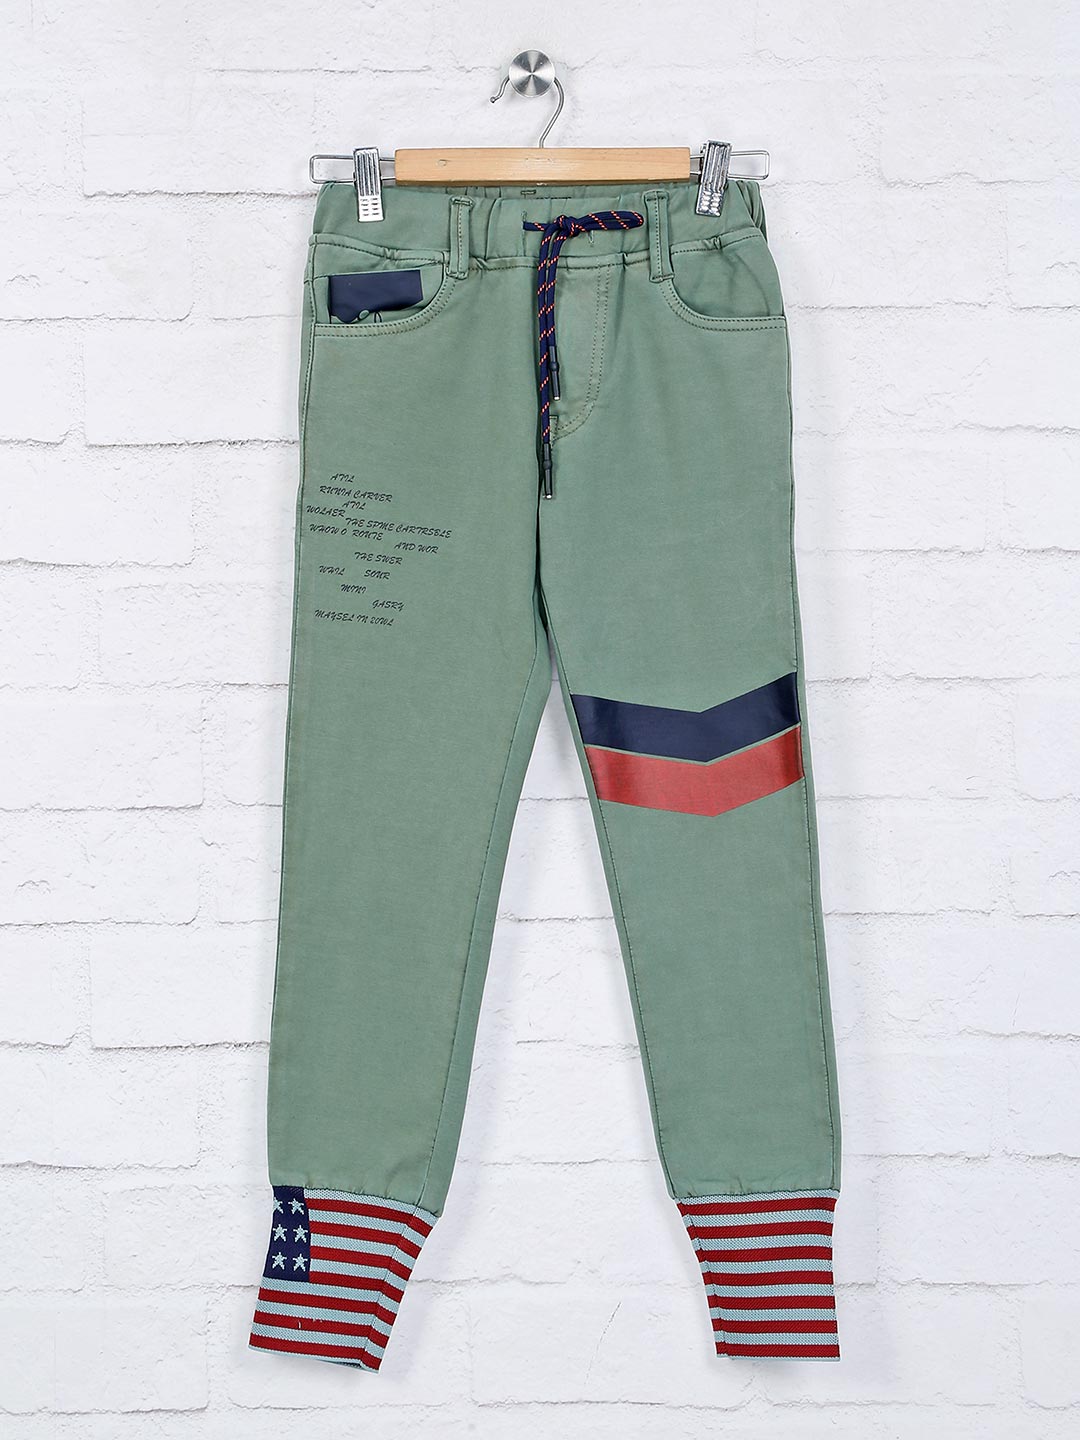 gents jeans pant design